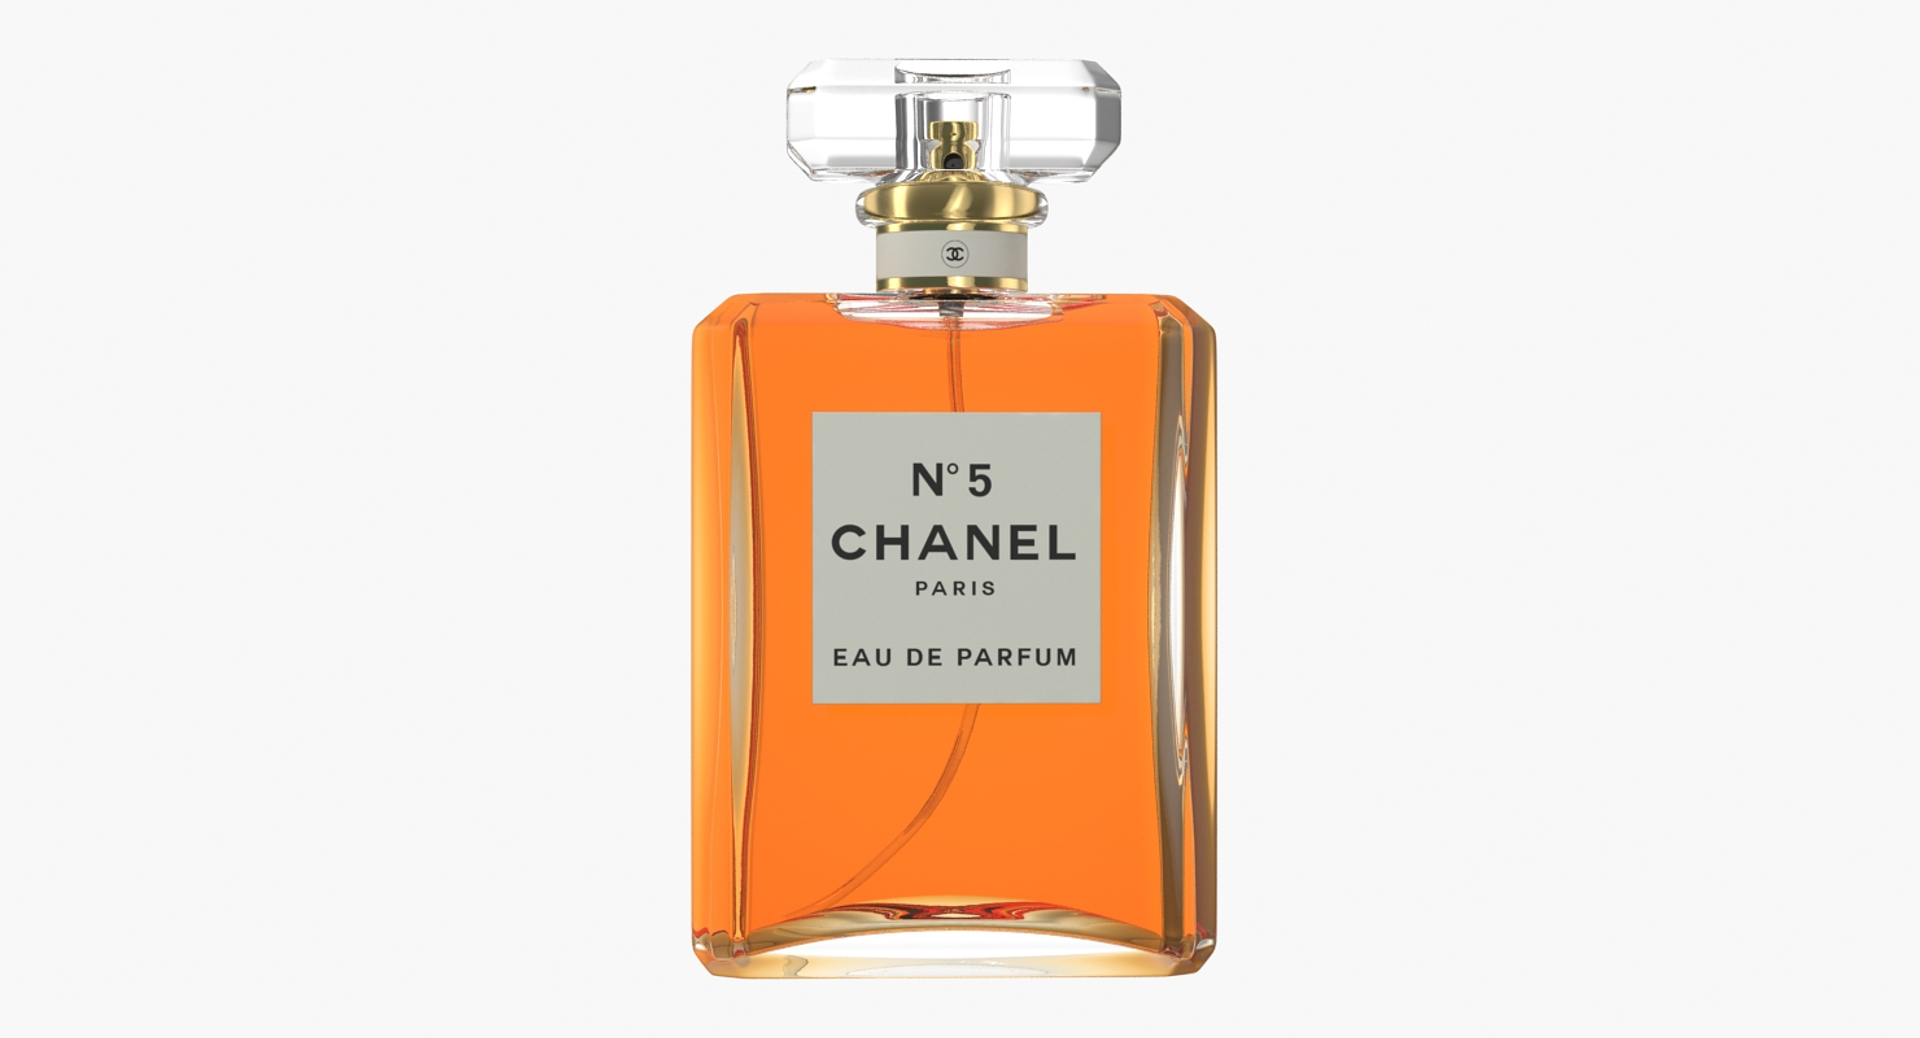 Chanel chance eau parfum 3D model - TurboSquid 1265078